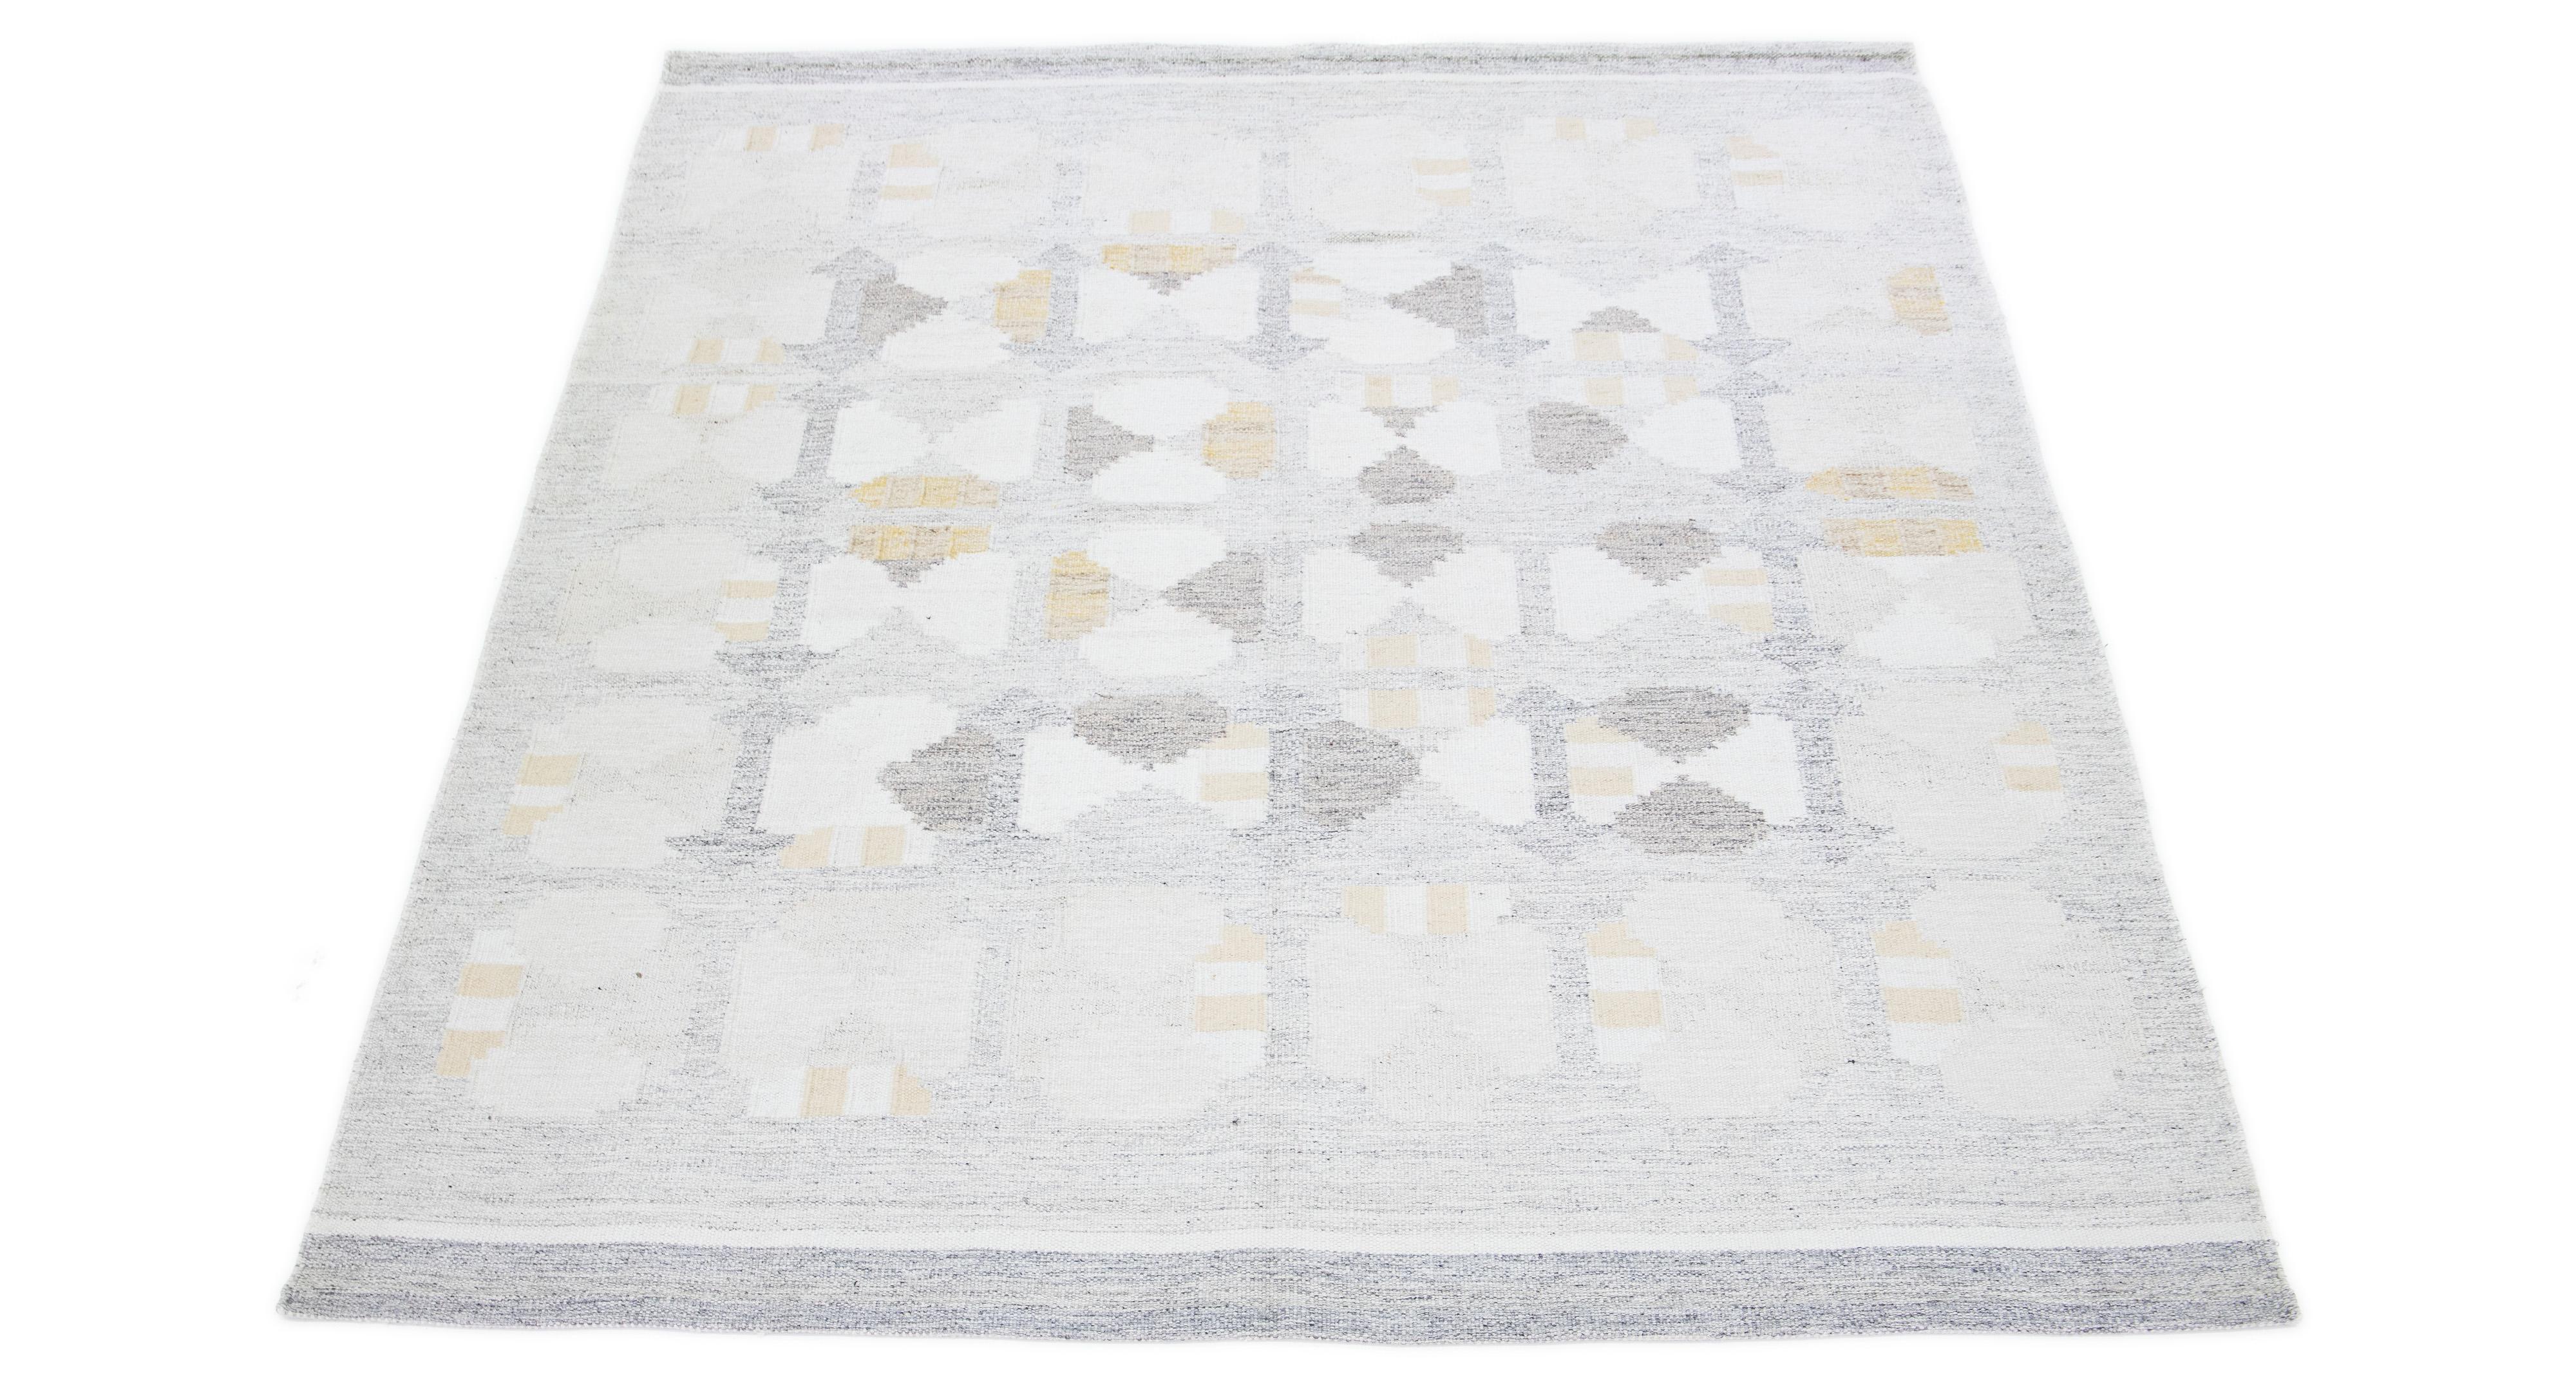 Le tapis à tissage plat présente un design suédois contemporain avec une base grise subtile. Il présente un motif géométrique élaboré sur toute sa surface, rehaussé par des tons subtils de jaune et d'ivoire.

 Ce tapis mesure 9' x 12'.


